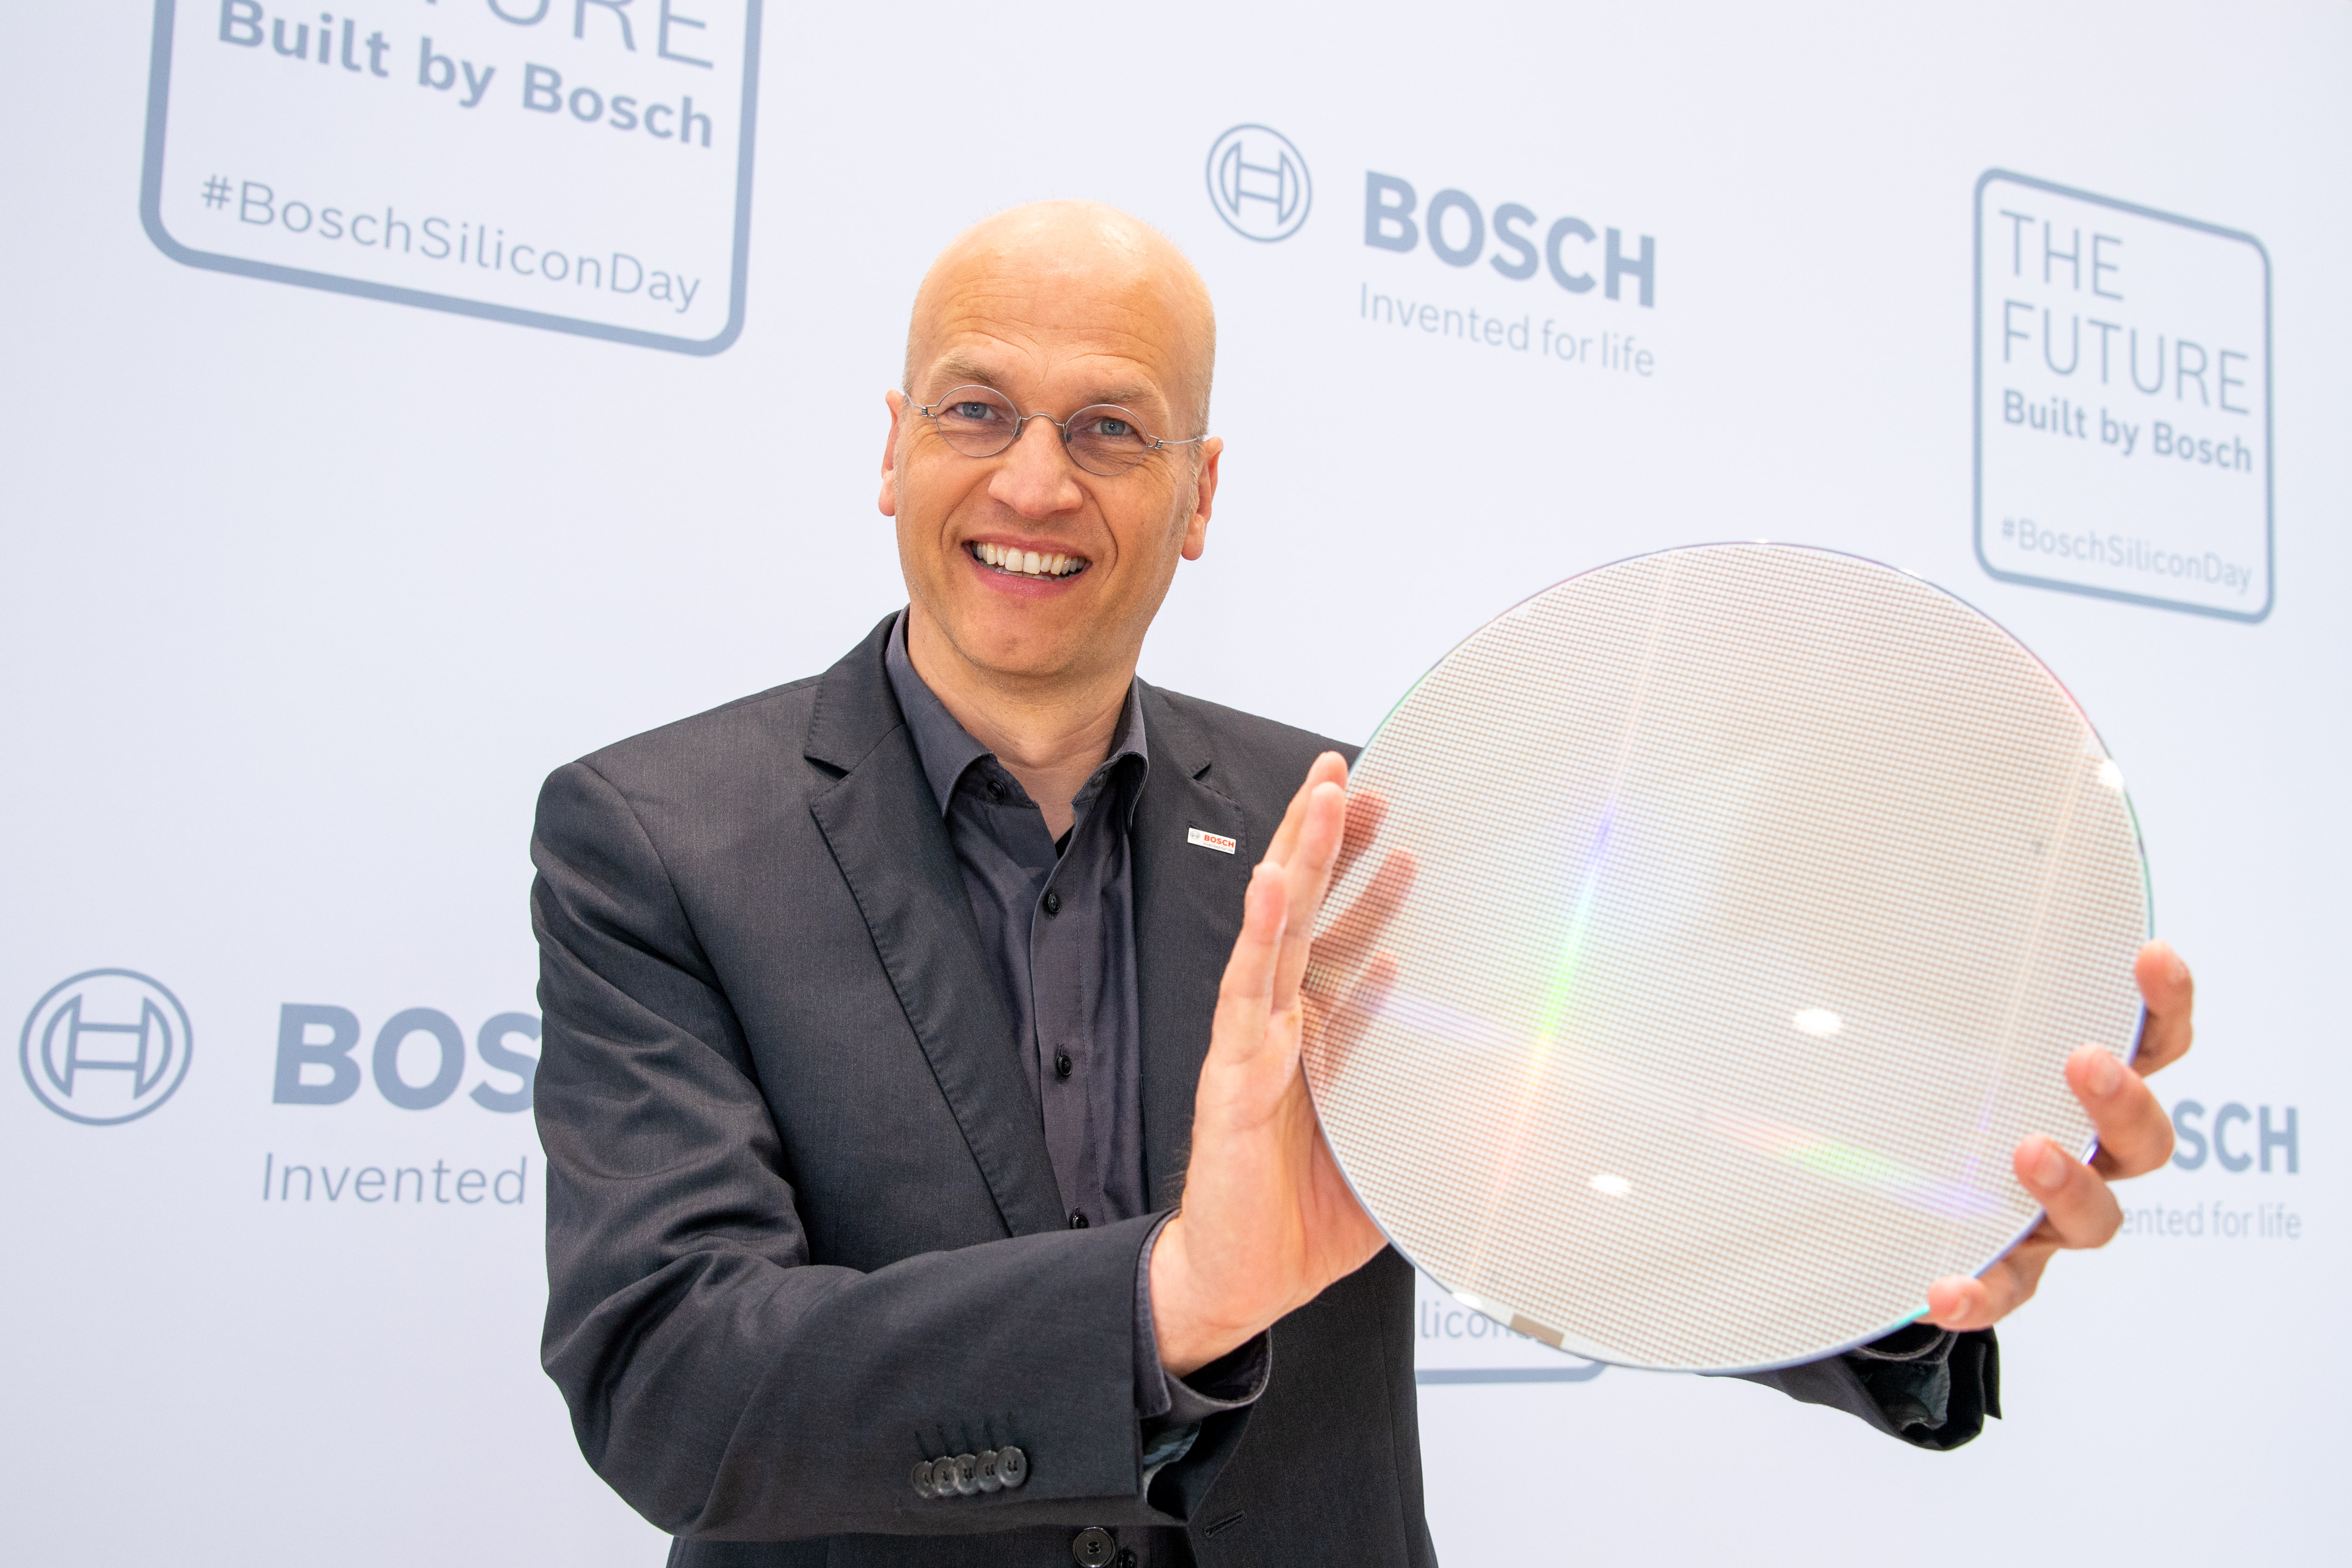 Bosch eröffnet Chipfabrik der Zukunft in Dresden